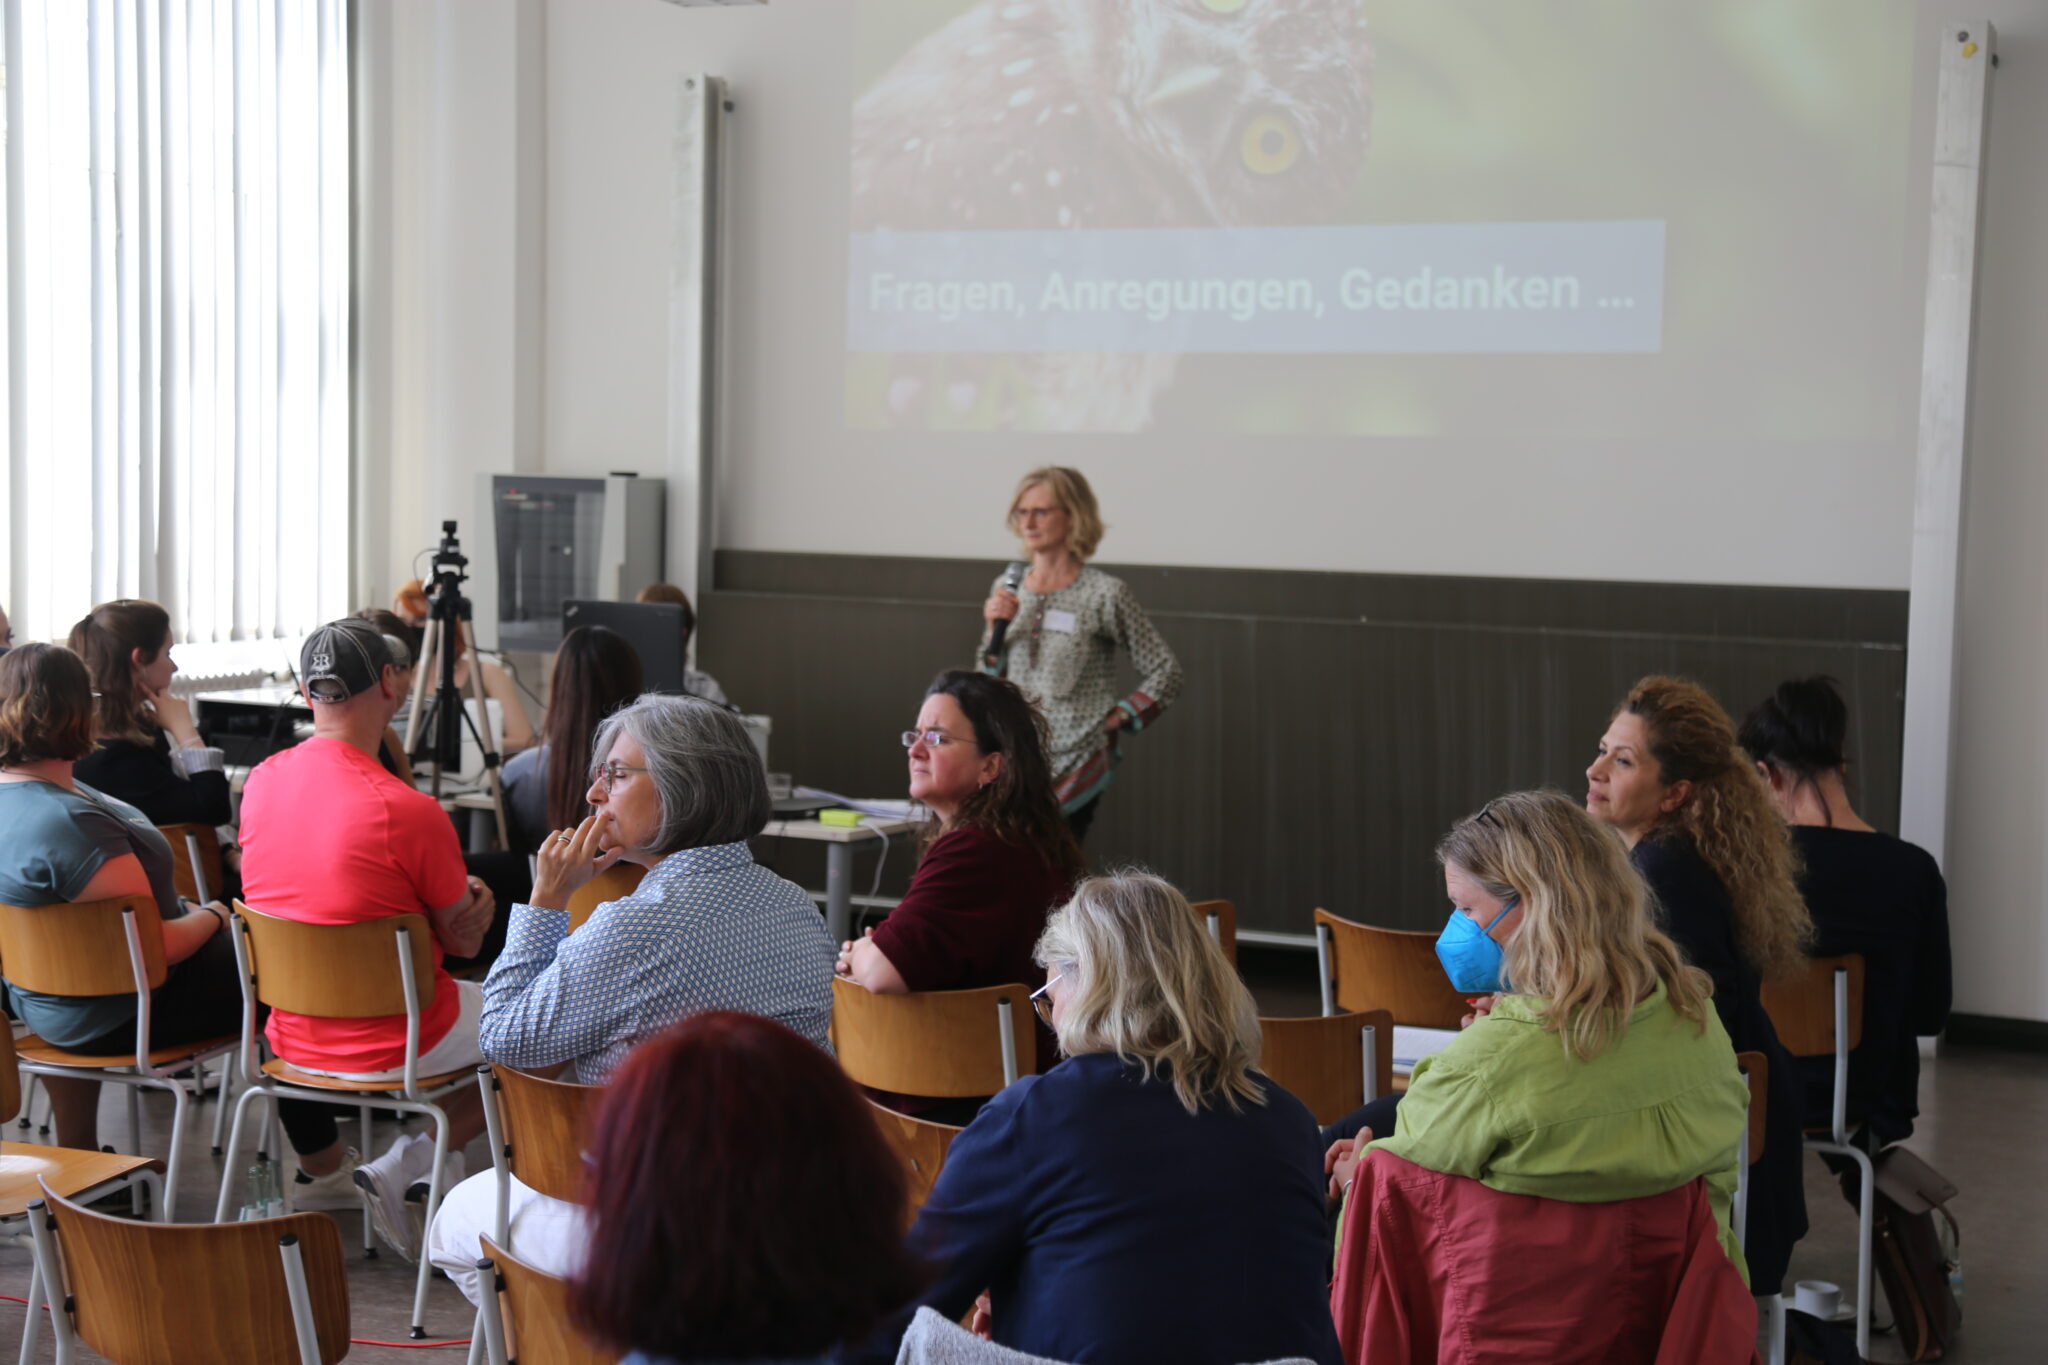 Susanne Eggert steht mit einem Mikrofon vor einem Publikum, welches sich umdreht und eine Person hinten anschaut